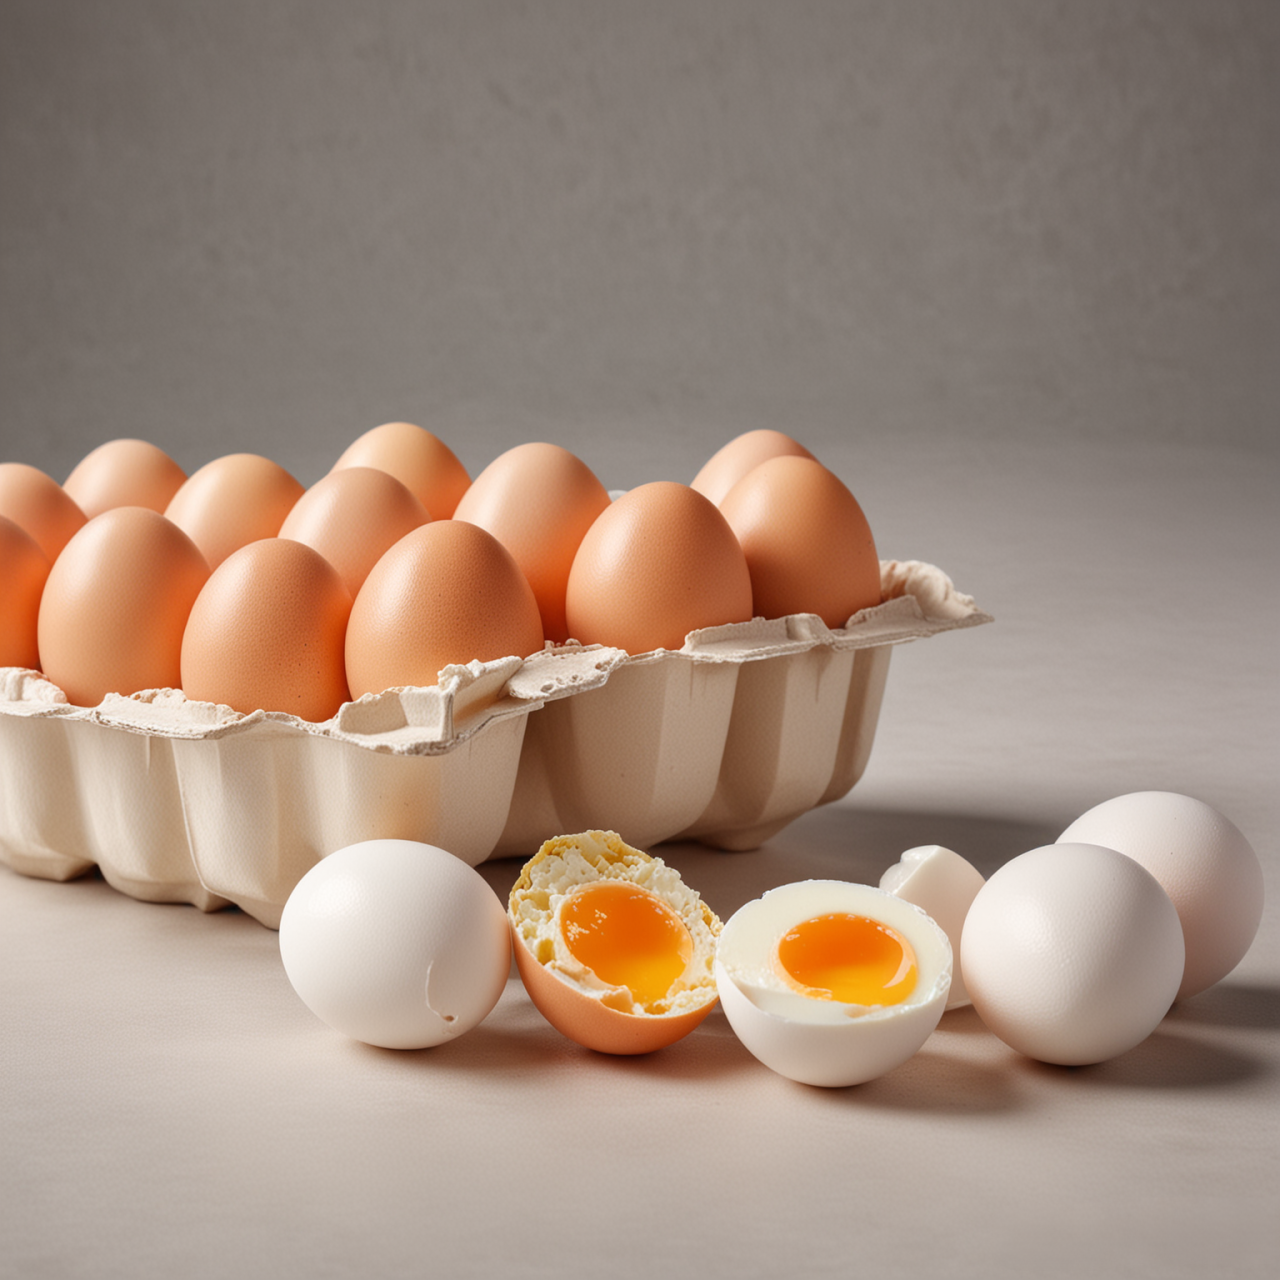 Analisis de huevos y ovoproductos